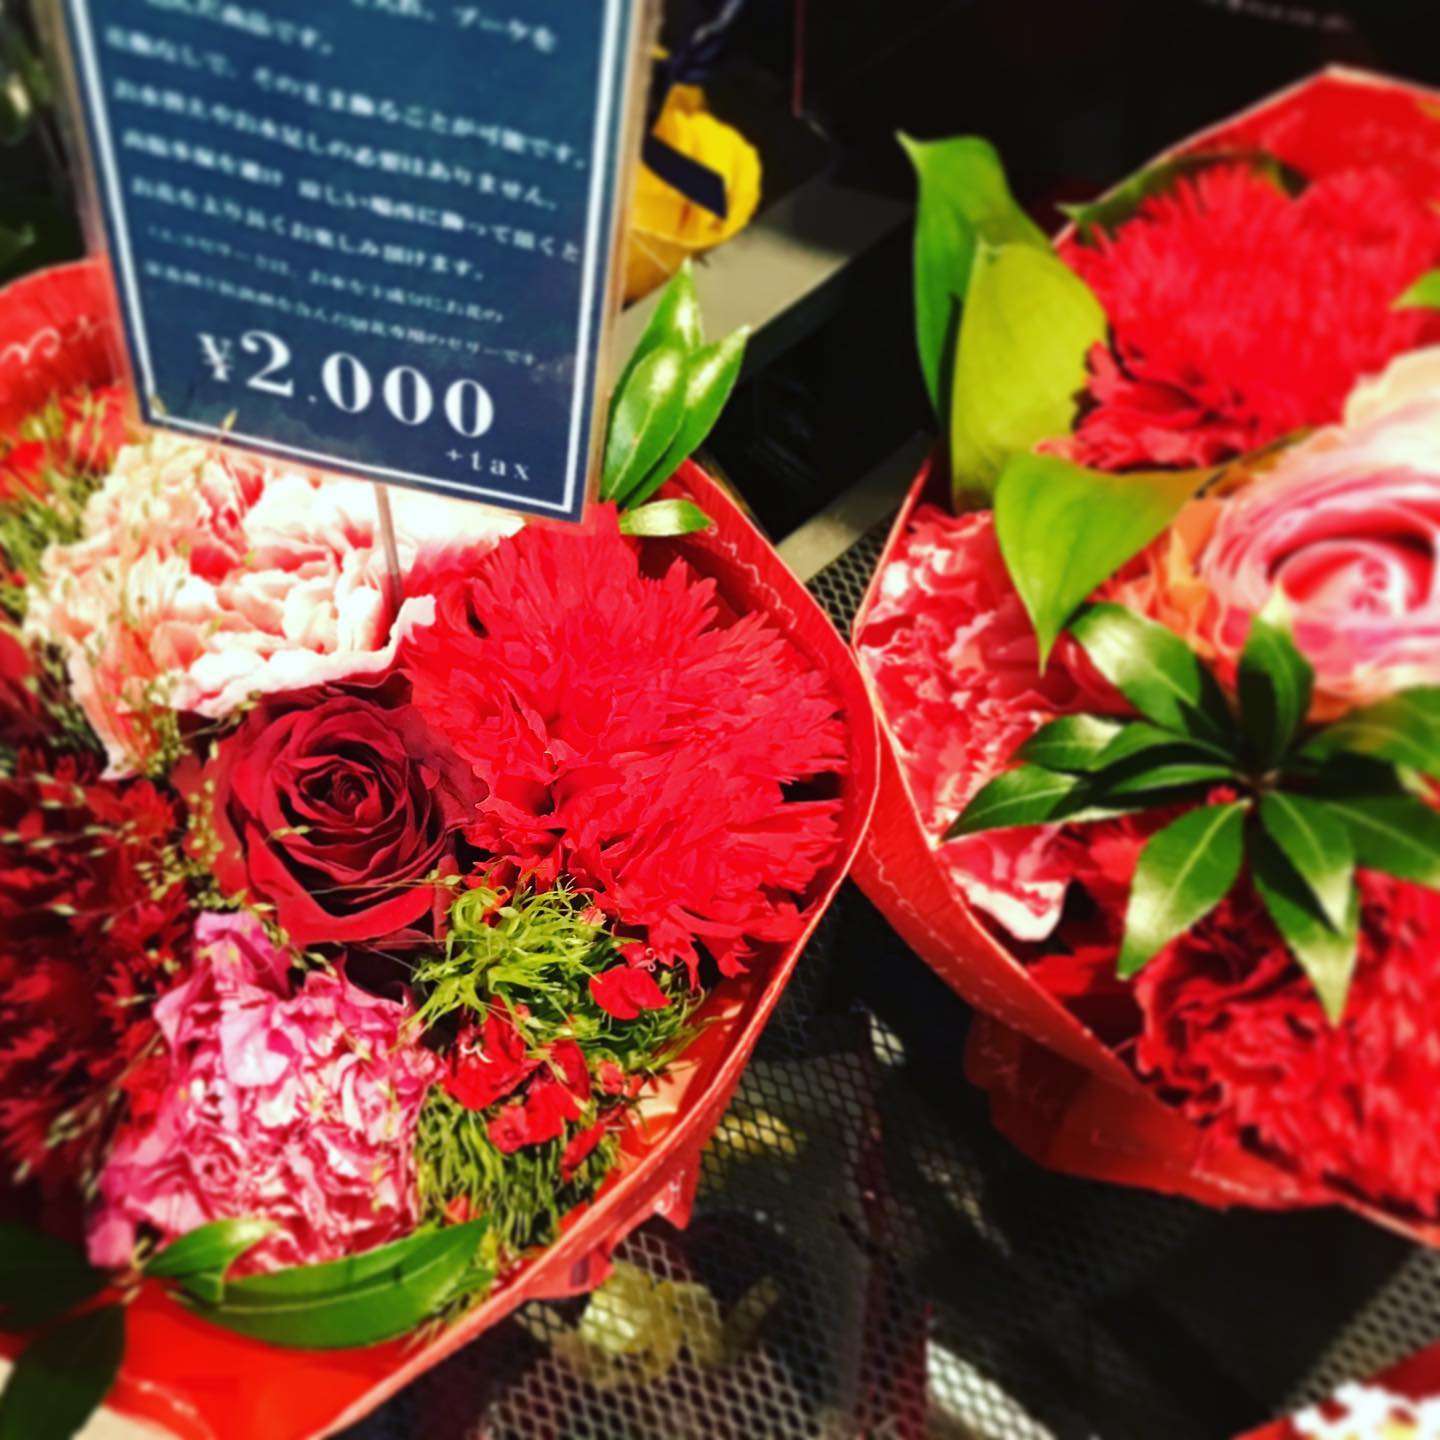 モンソーフルールアトレ川崎店です。

今度の日曜日はバレンタインデー️

赤いお花のブーケはいかがでしょうか？

海外では、バレンタインデーには男性から女性にお花などをプレゼントして気持ちを伝えるのが主流だそうです。

チョコレートと一緒に赤いブーケのプレゼント。
おすすめです！！

モンソーフルールアトレ川崎店
★★★★★★★★★★★
〒210-0007
神奈川県川崎市川崎区駅前本町26-1
アトレ川崎1F
TEL &FAX044-200-6701
営業時間:10:00〜21:00
★★★★★★★★★★★
.